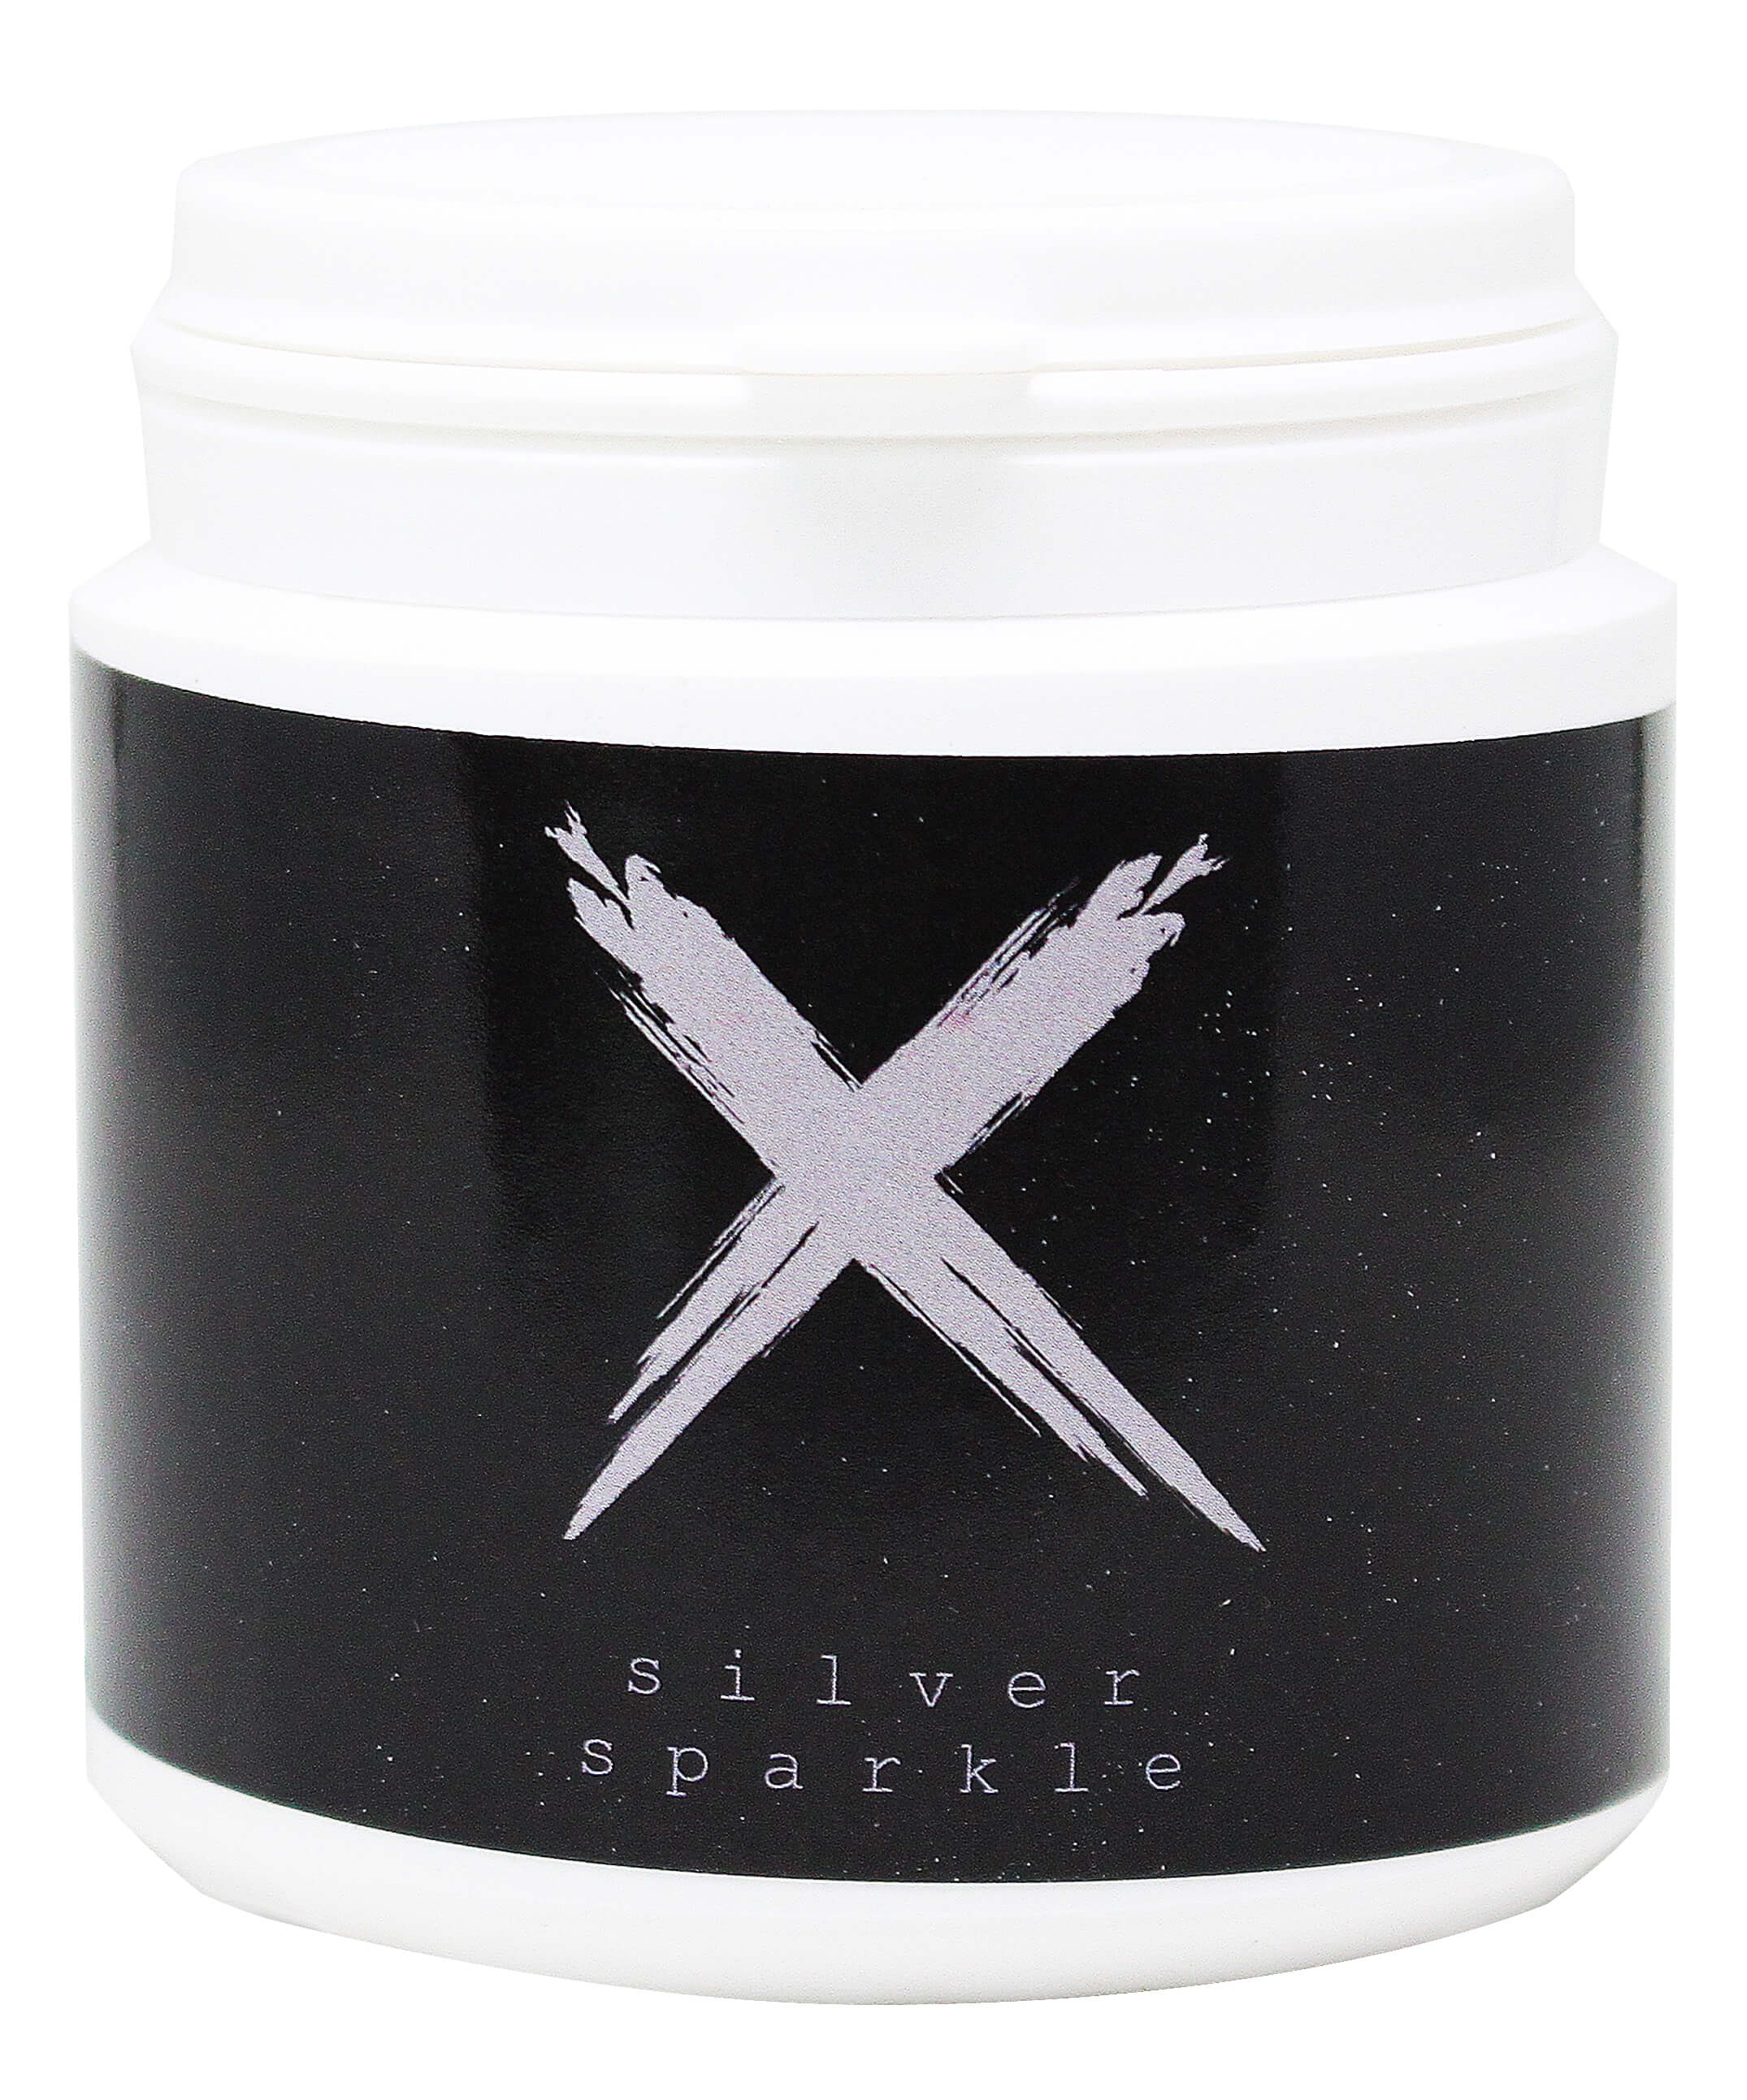 Xschischa Sparkles 50g | Silver Sparkle